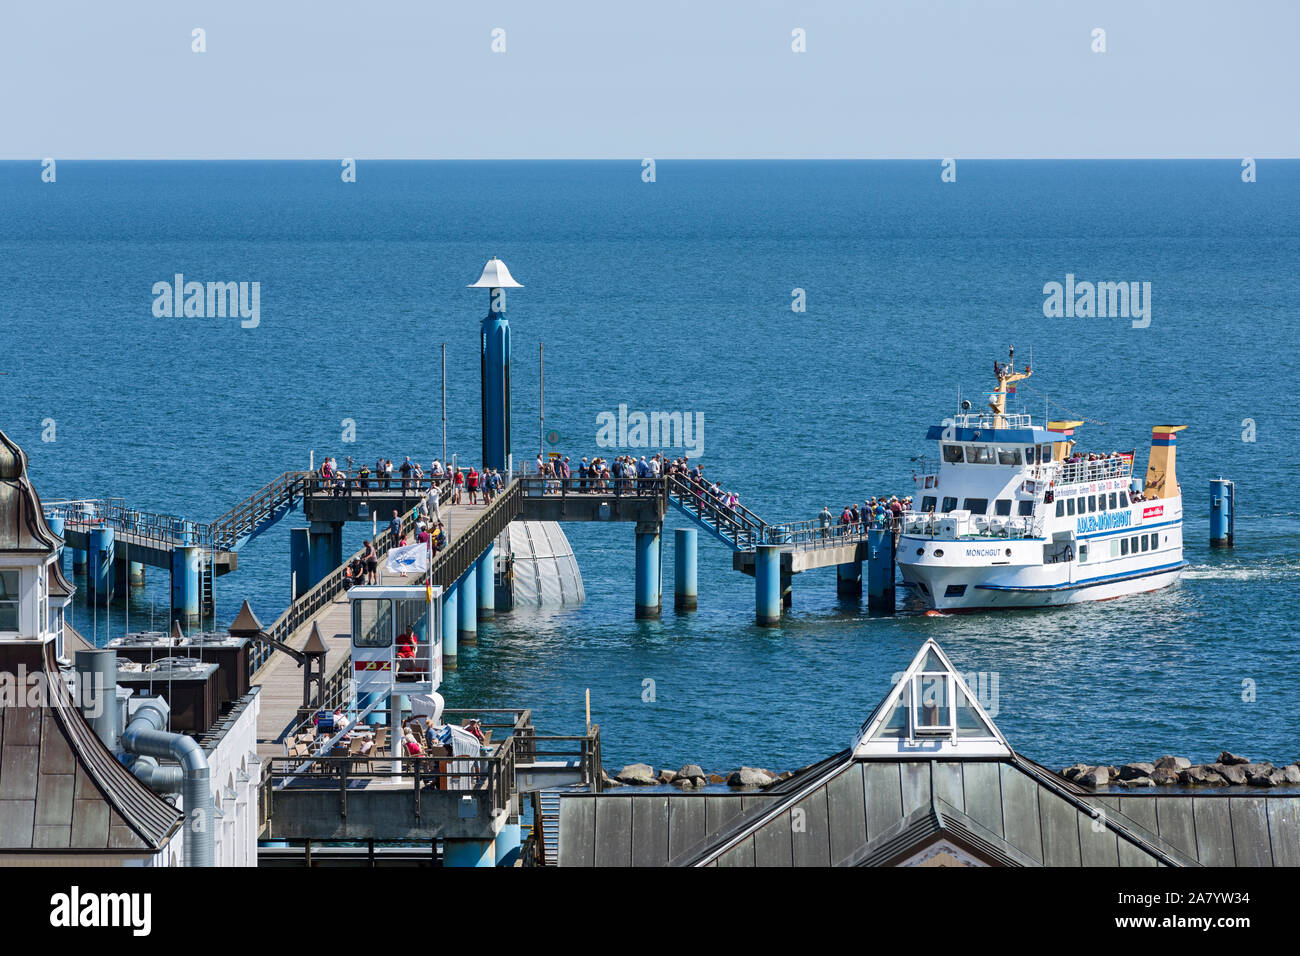 Sellin, Rügen, Seebrücke, Schiff, Touristen Stock Photo